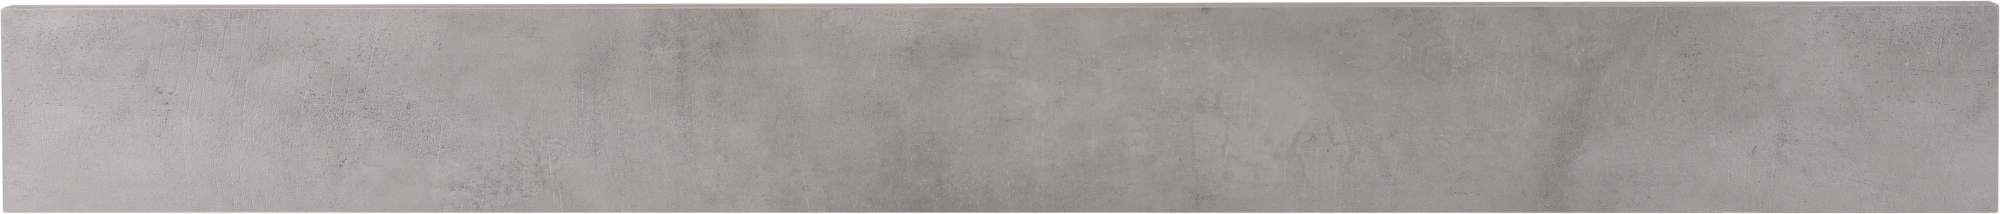 Frente de cajón de cocina atenas cemento oscuro h 12.8 x l 120 cm